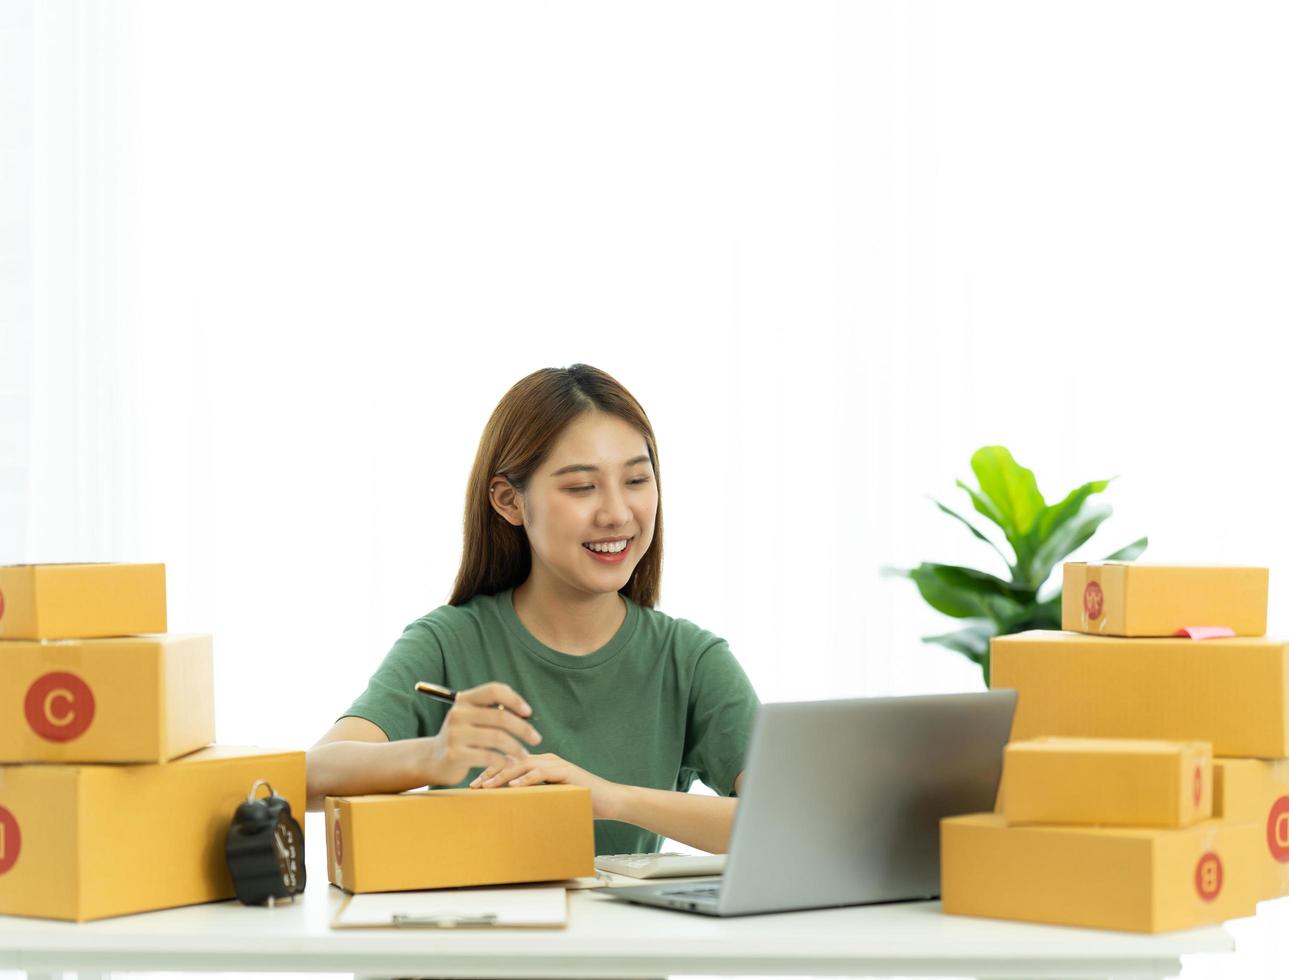 startar småföretag SME-ägare kvinnliga entreprenörer kollar onlinebeställningar för att förbereda sig på att packa lådorna, sälja till kunder, SM-affärsidéer online. foto